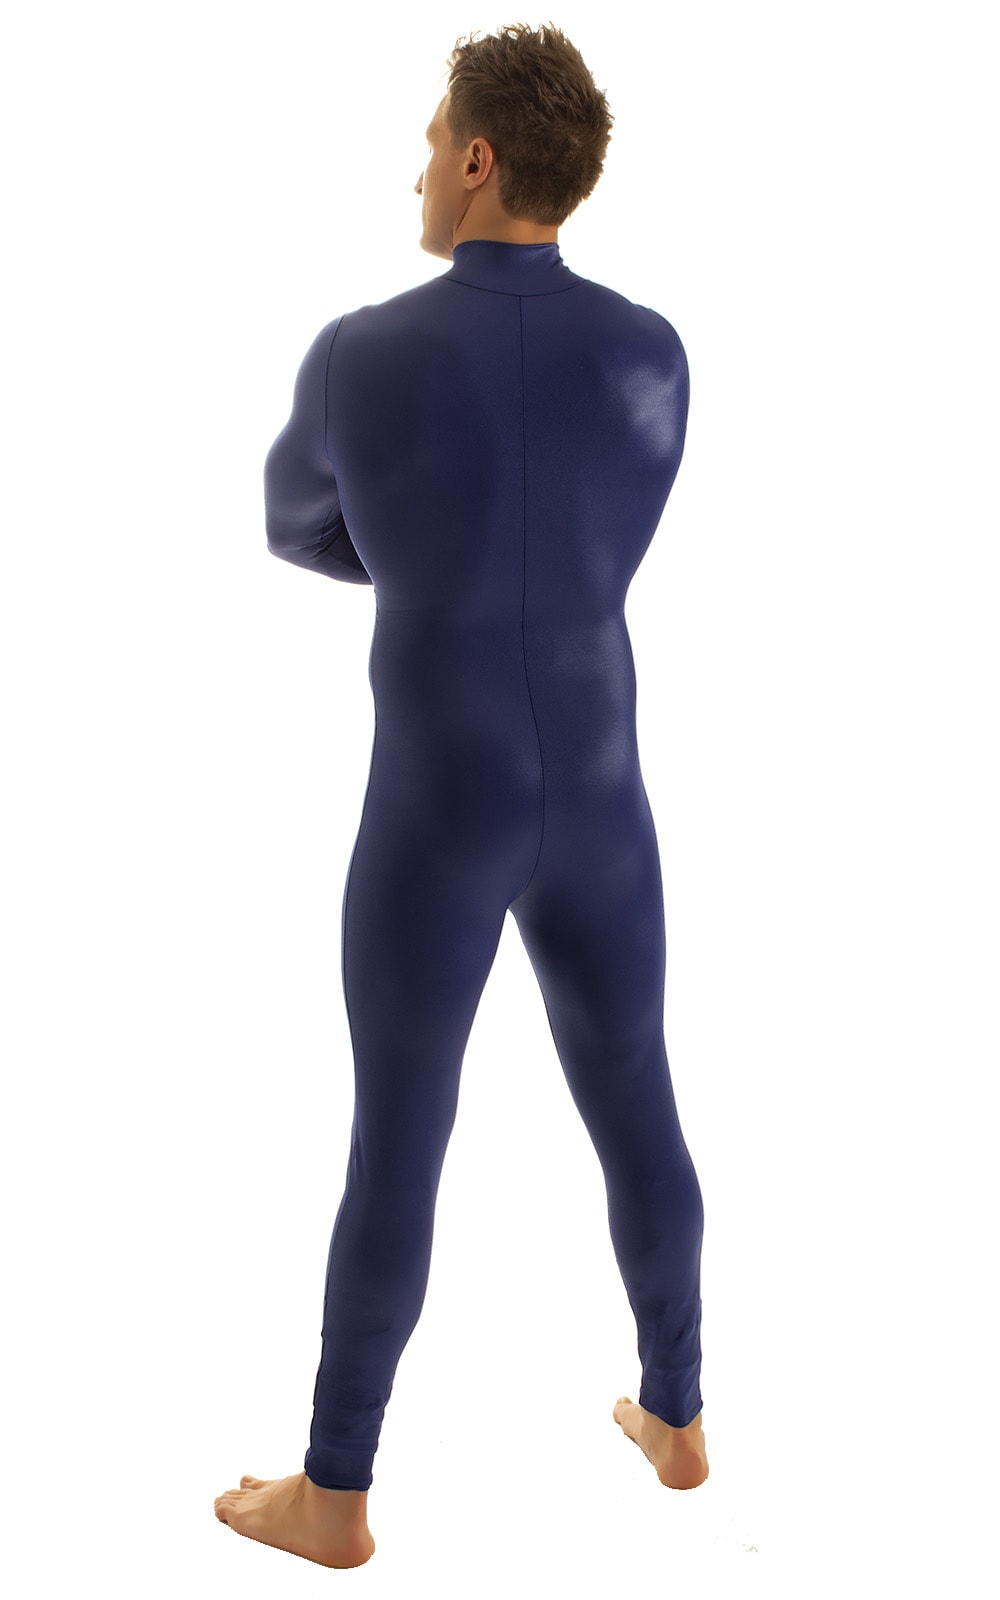 Full Bodysuit Zentai Lycra Spandex Suit for men in Wet Look Navy Blue, Rear View